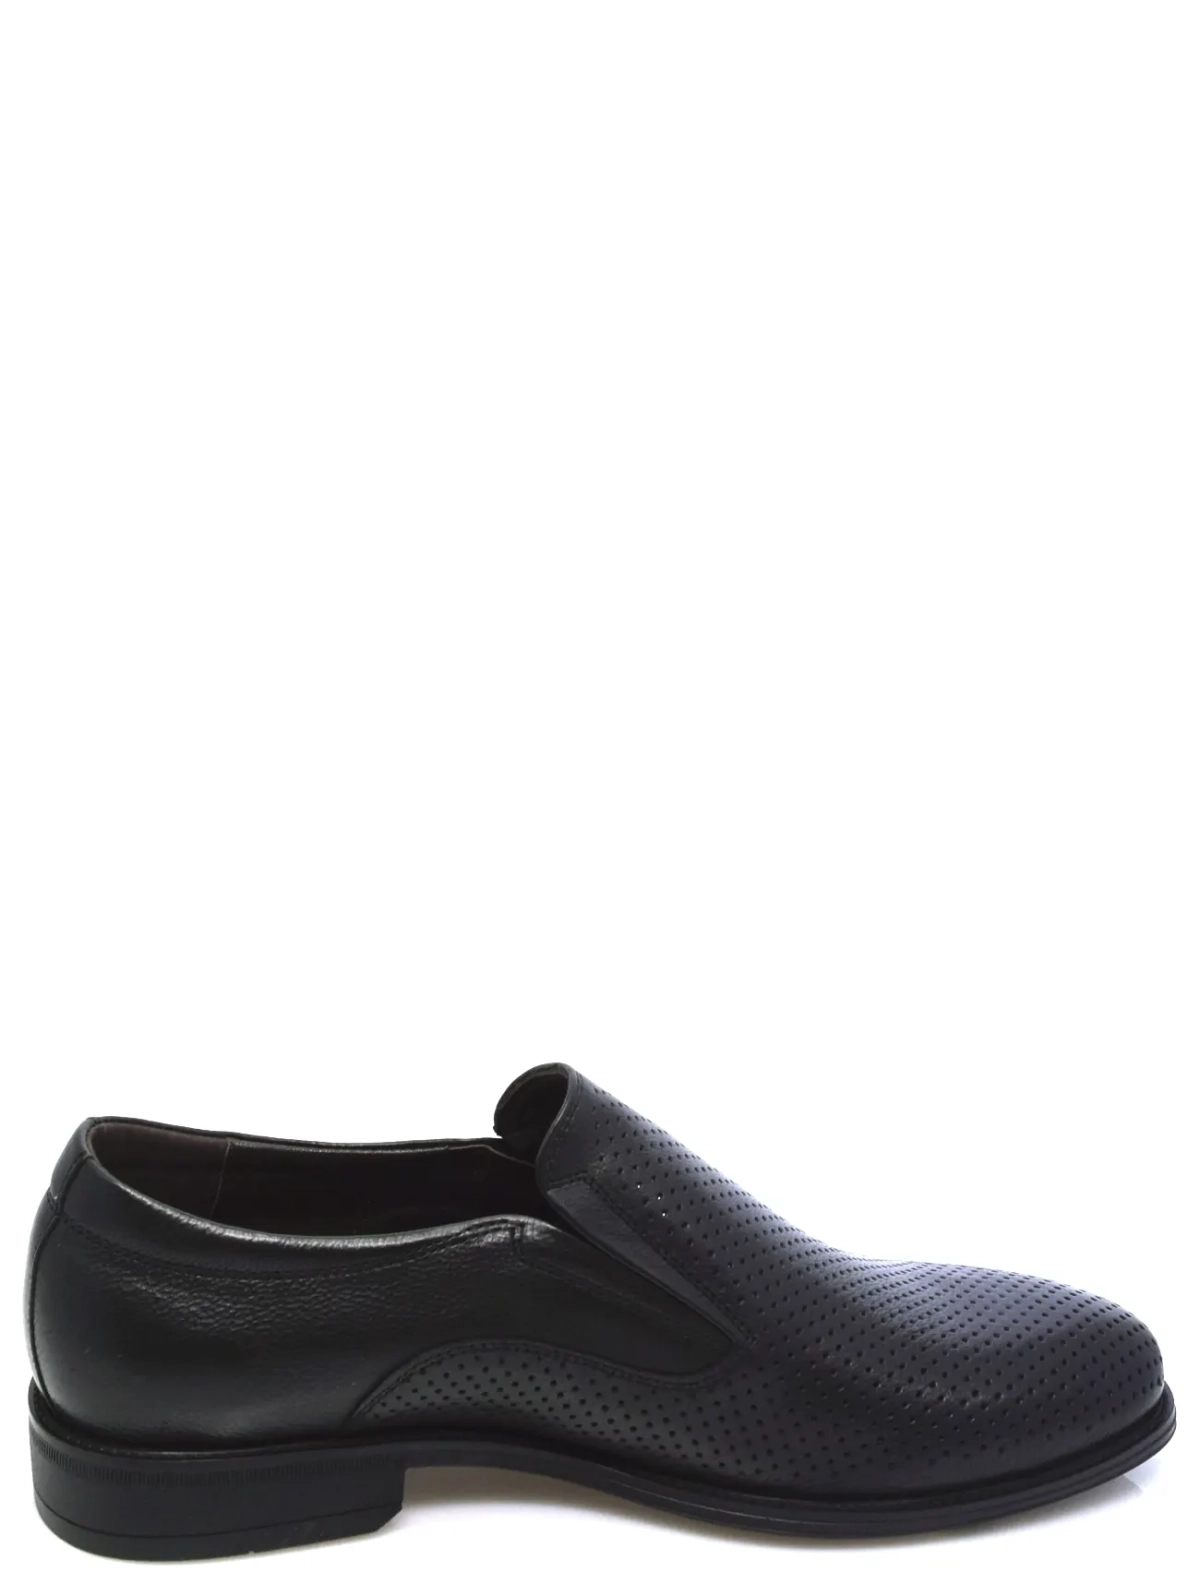 Romitan 1-995 мужские туфли